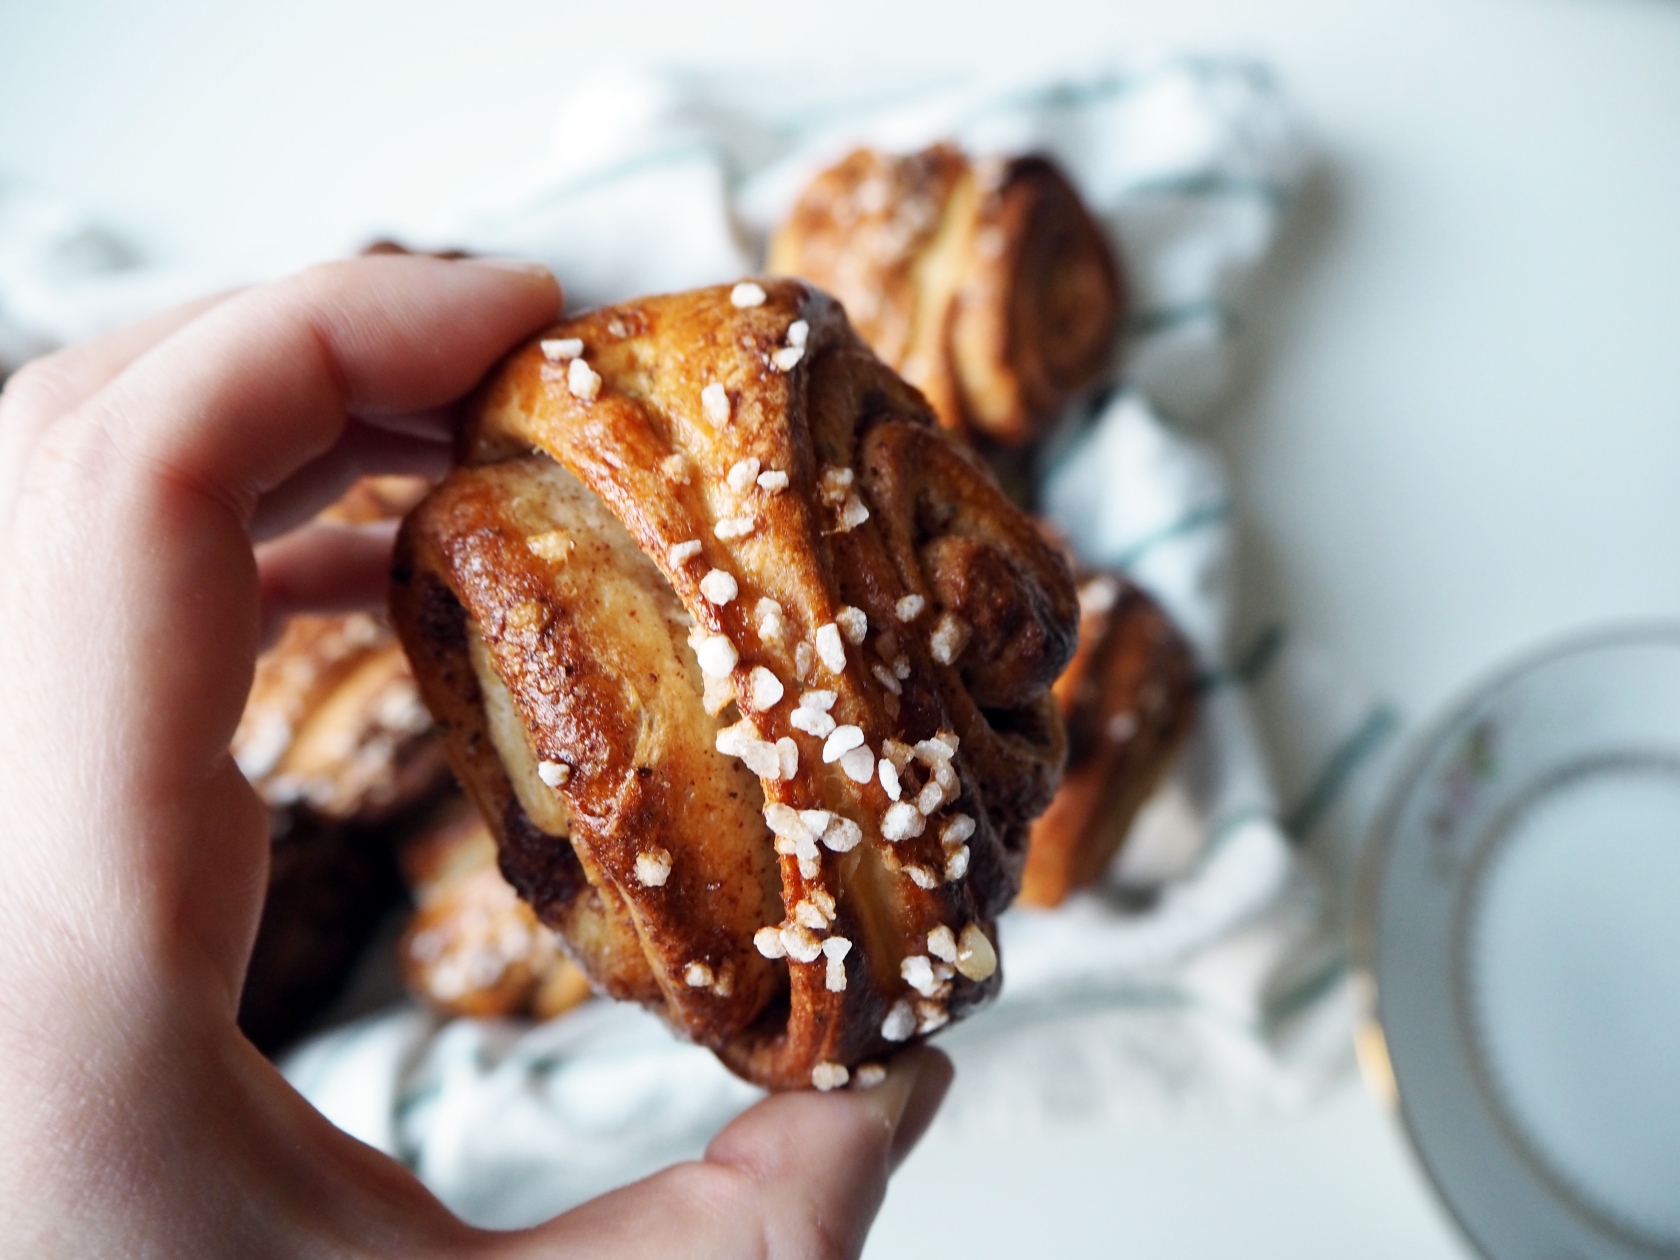 Korvapuusti – Smell The Finnish Cinnamon Rolls! | My Dear Kitchen in ...